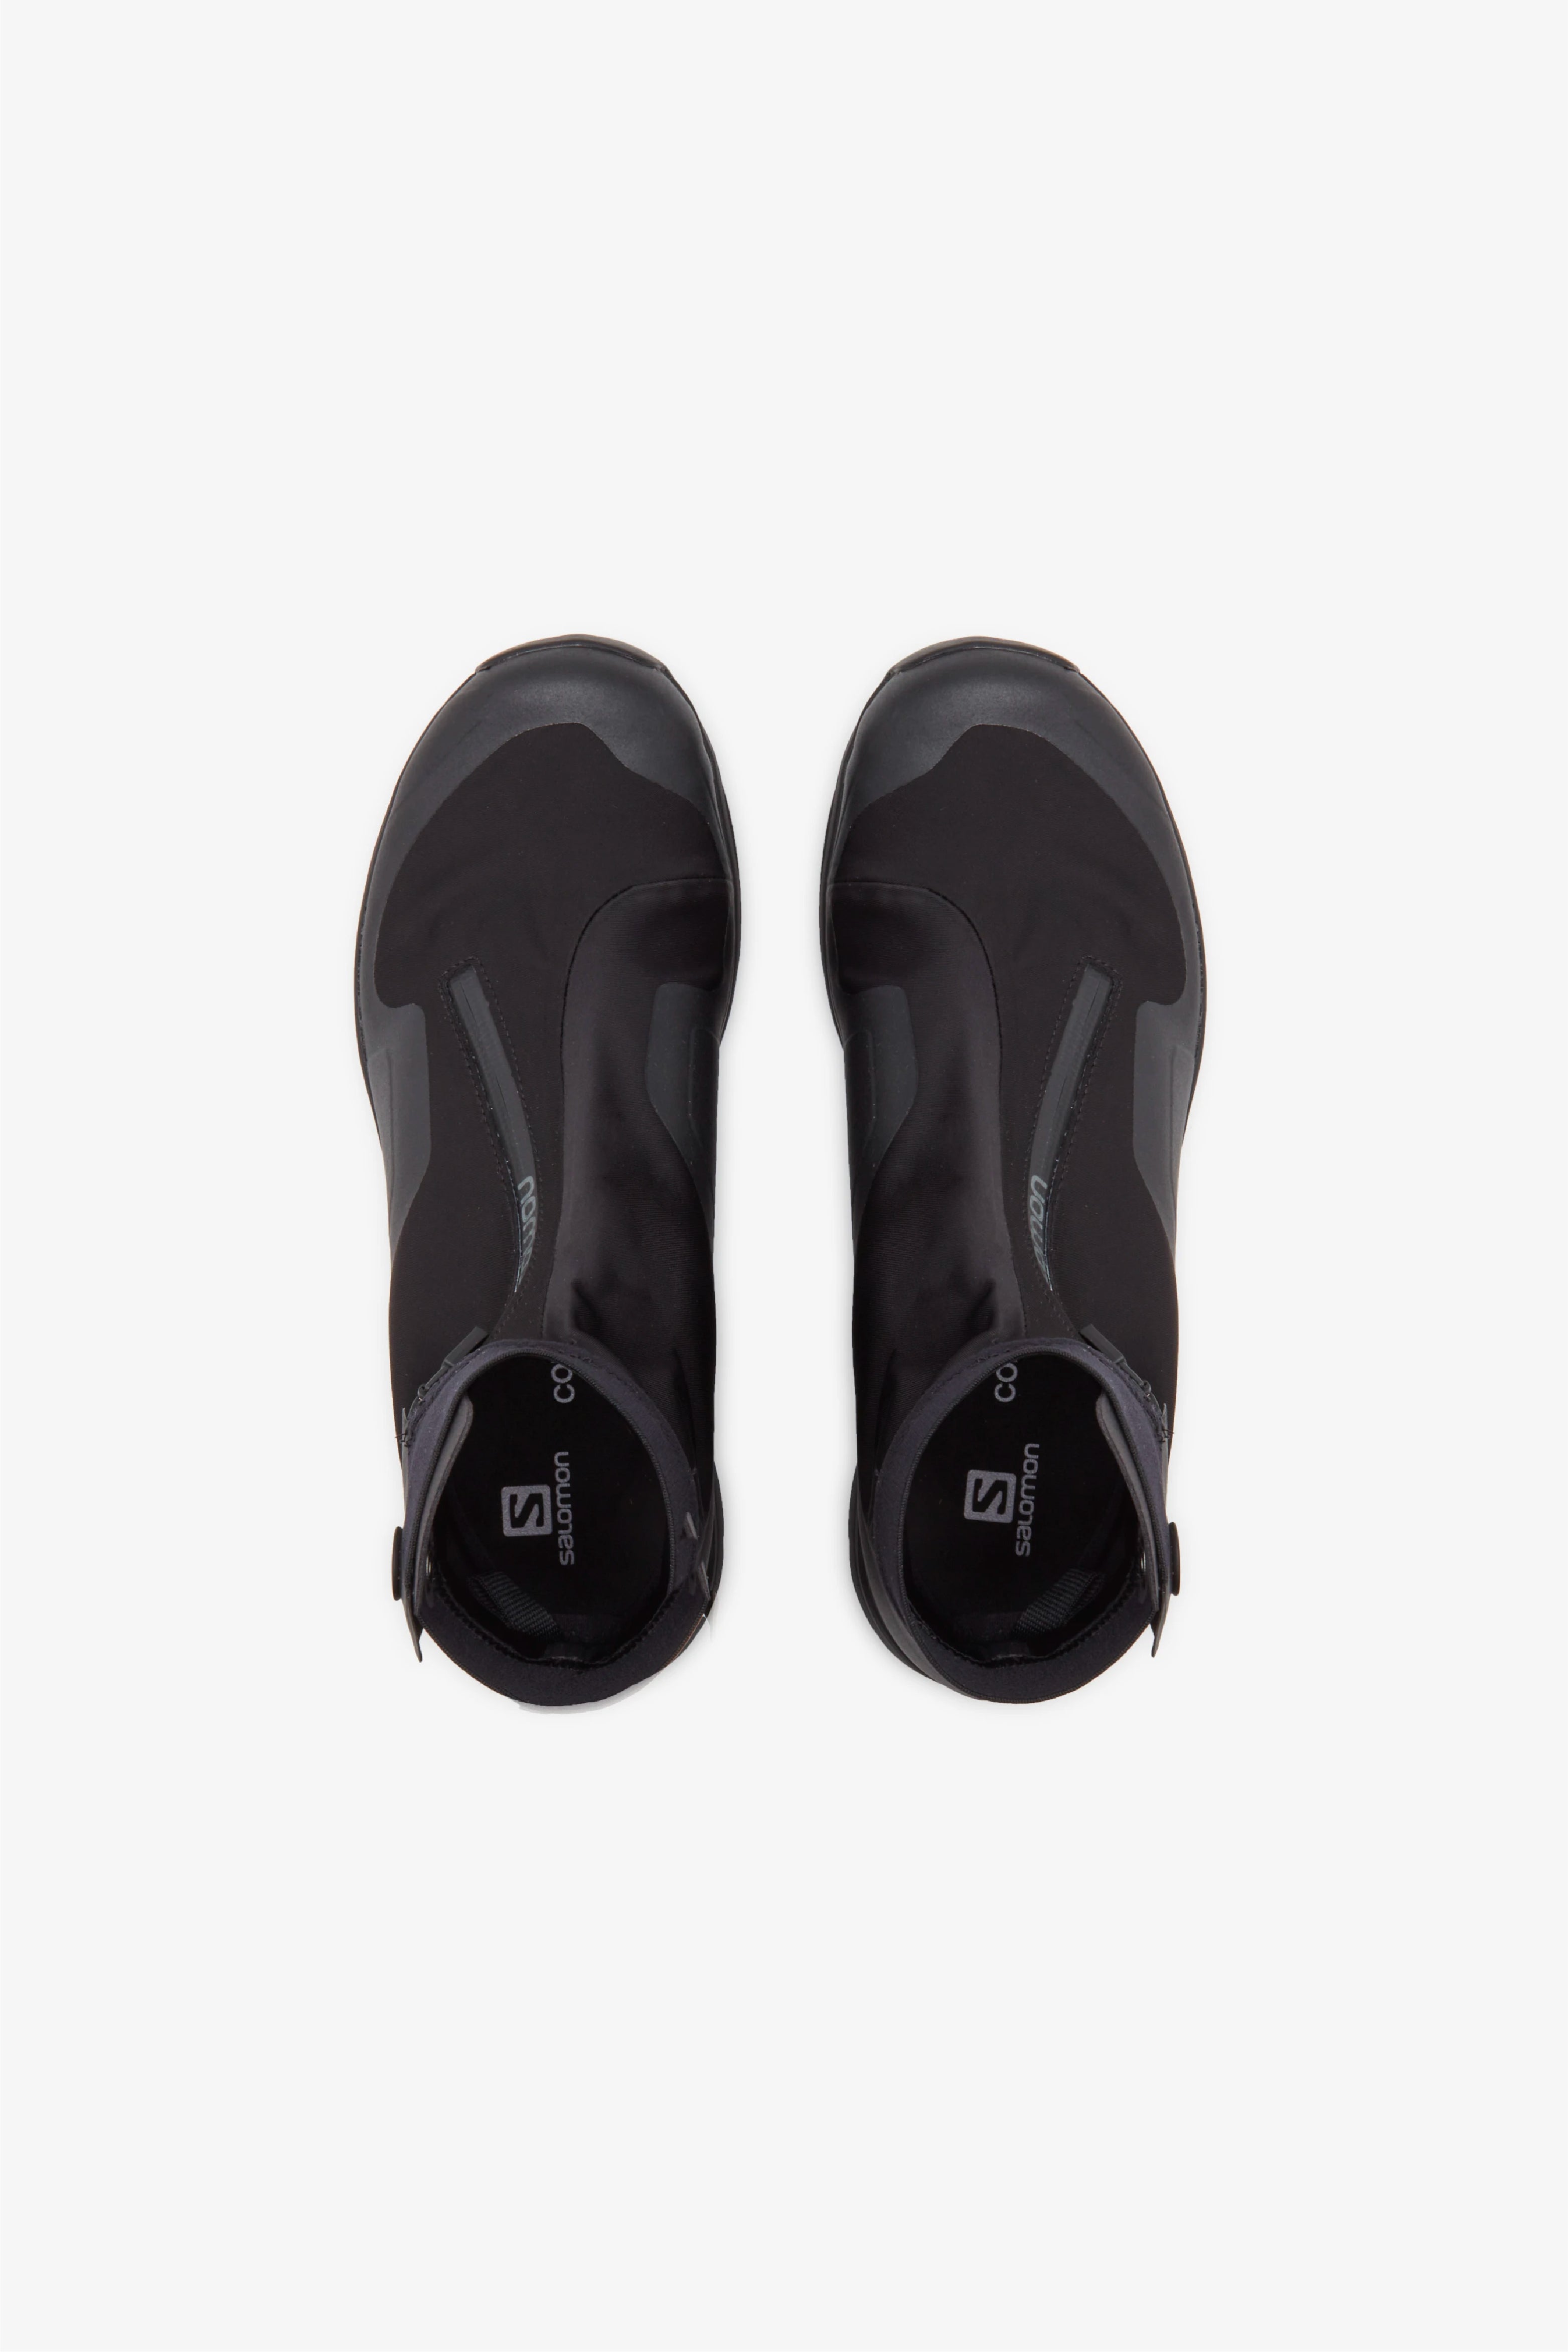 Selectshop FRAME - COMME DES GARÇONS Comme des Garçons x Salomon XA-Alpine 2 Footwear Dubai